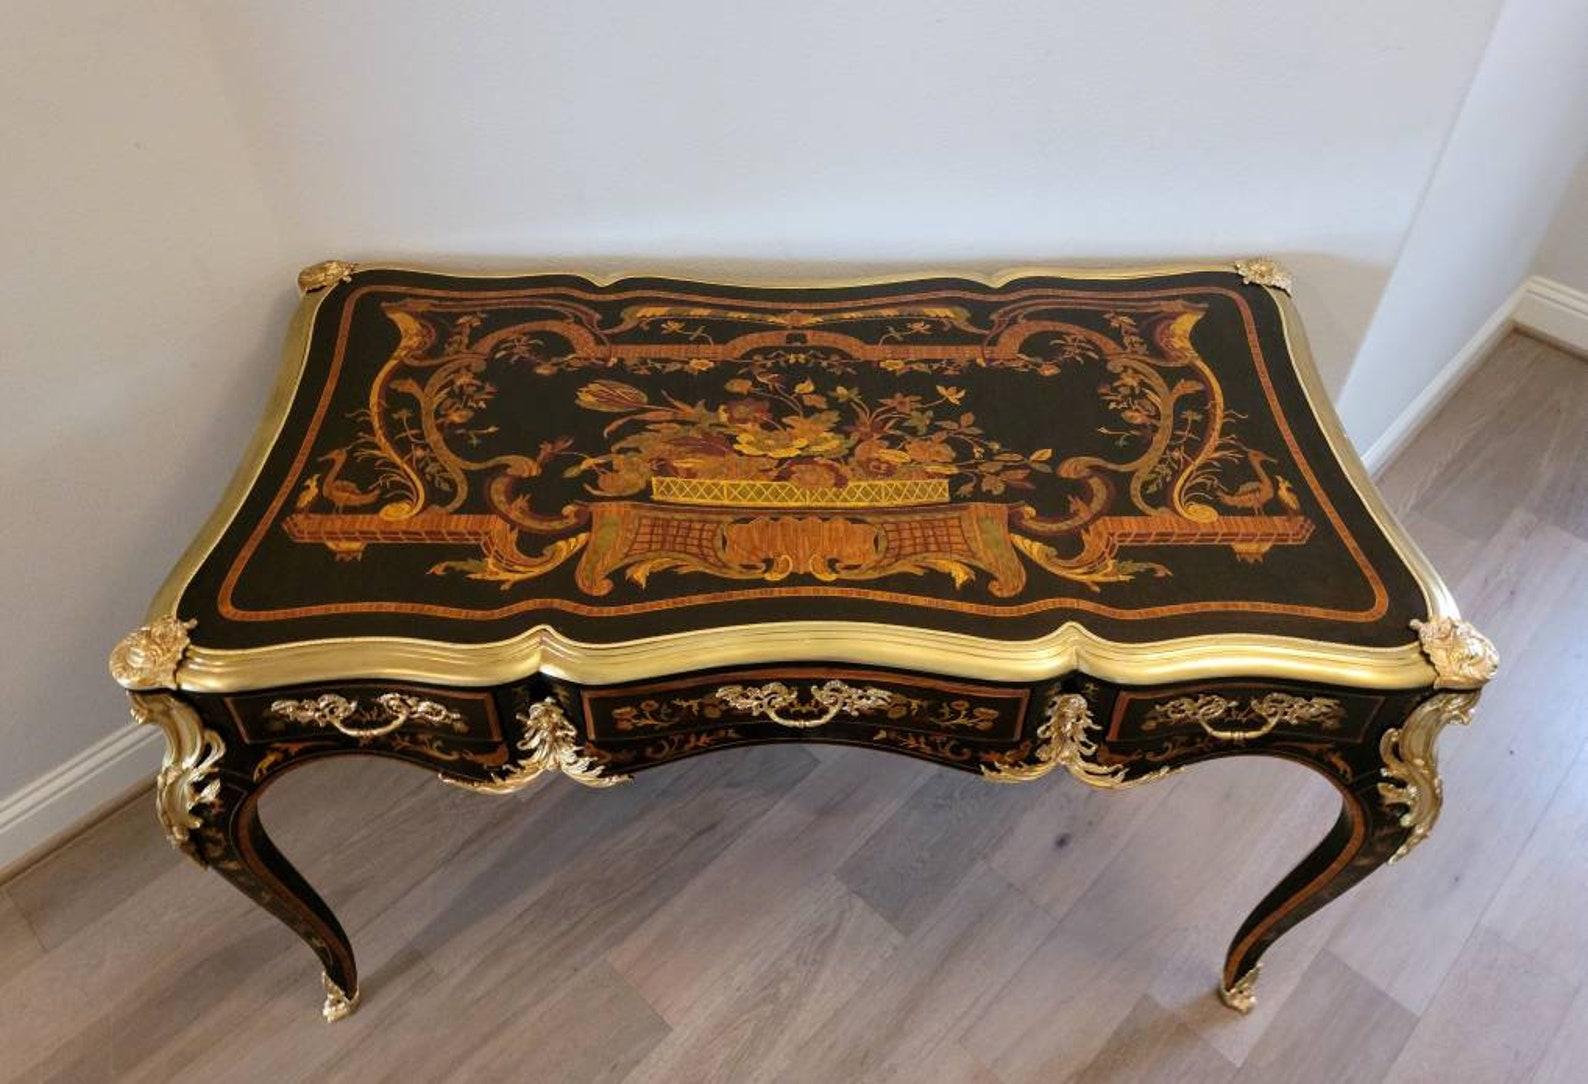 Französische Perfektion! Eine beeindruckende und sehr feine Qualität Vintage Louis XV Stil Ormolu montiert Intarsien bureau plat. 

Exquisit handgefertigt nach dem Vorbild des bedeutenden französischen Meisters Jacques Dubois (1694-1763). Der